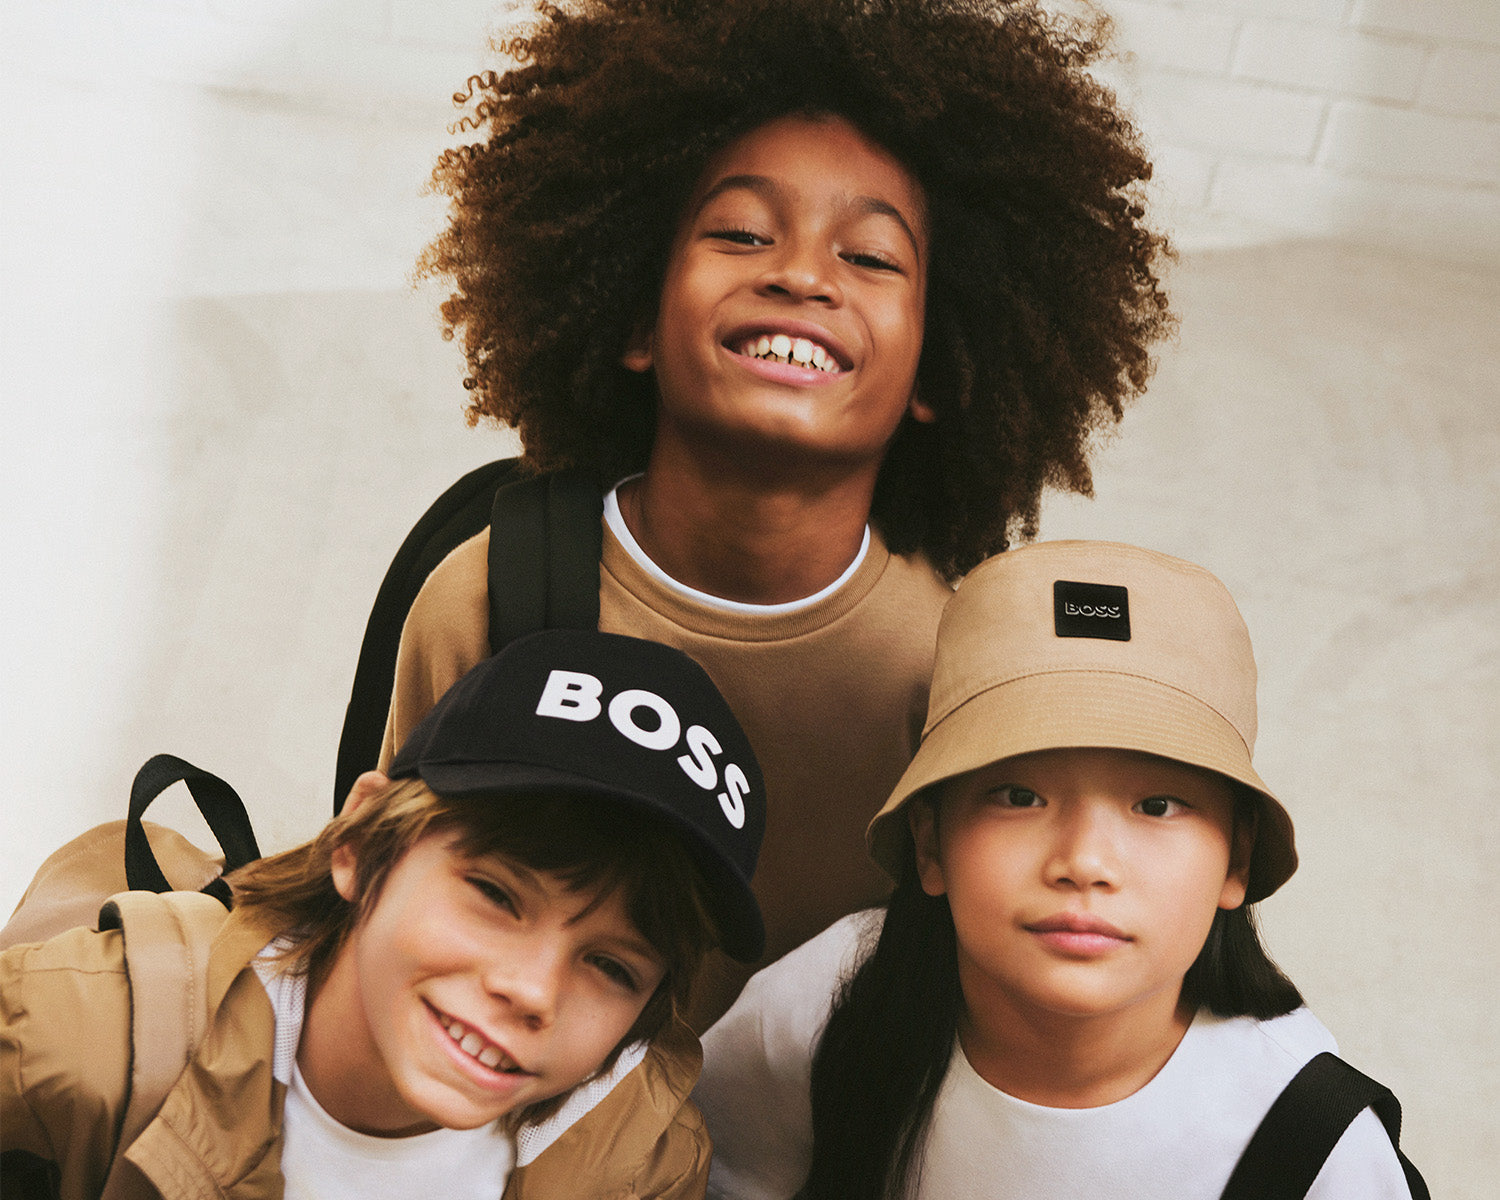 Boss Kidswear Reversible logo-print Bucket Hat - Black